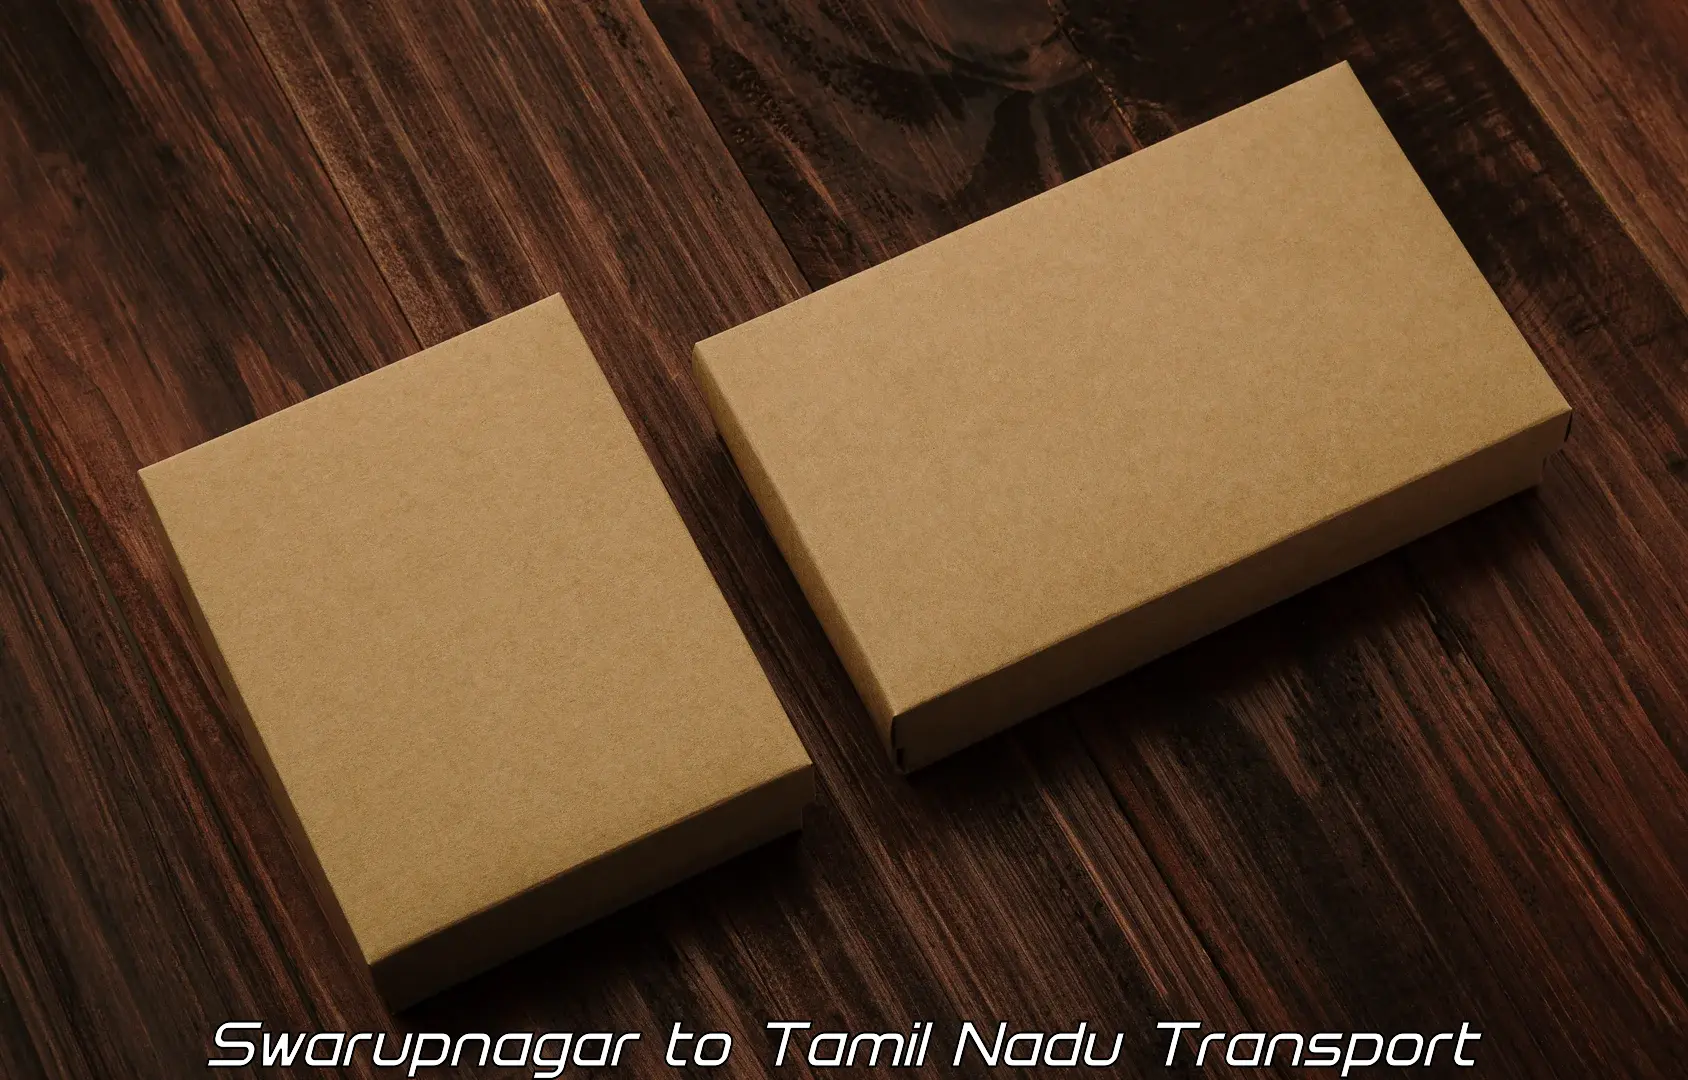 Transport shared services Swarupnagar to Ennore Port Chennai